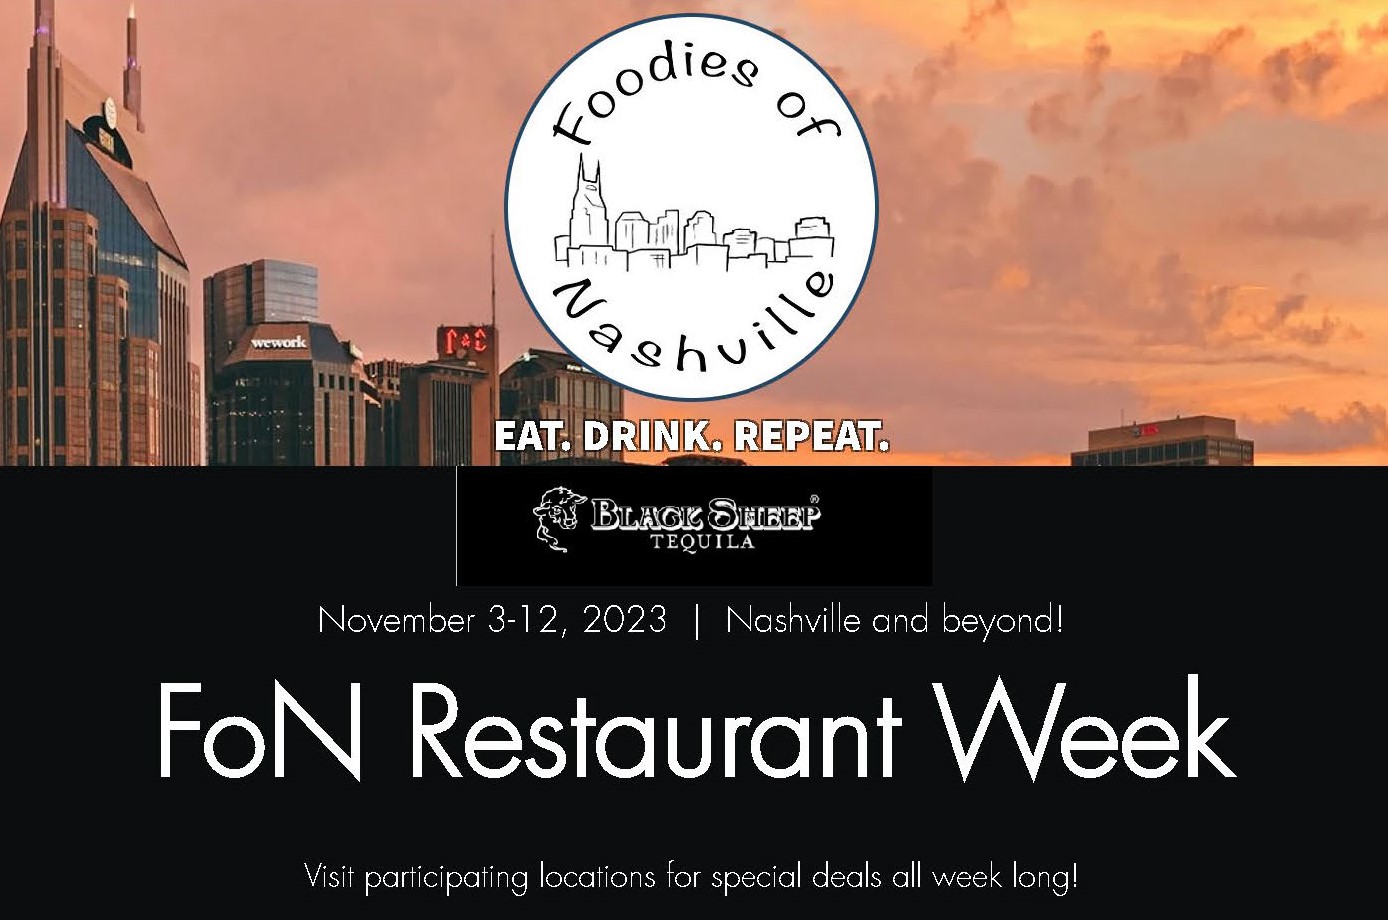 
Foodies of Nashville Restaurant Week will be held November 3 to Nov 12, 2023